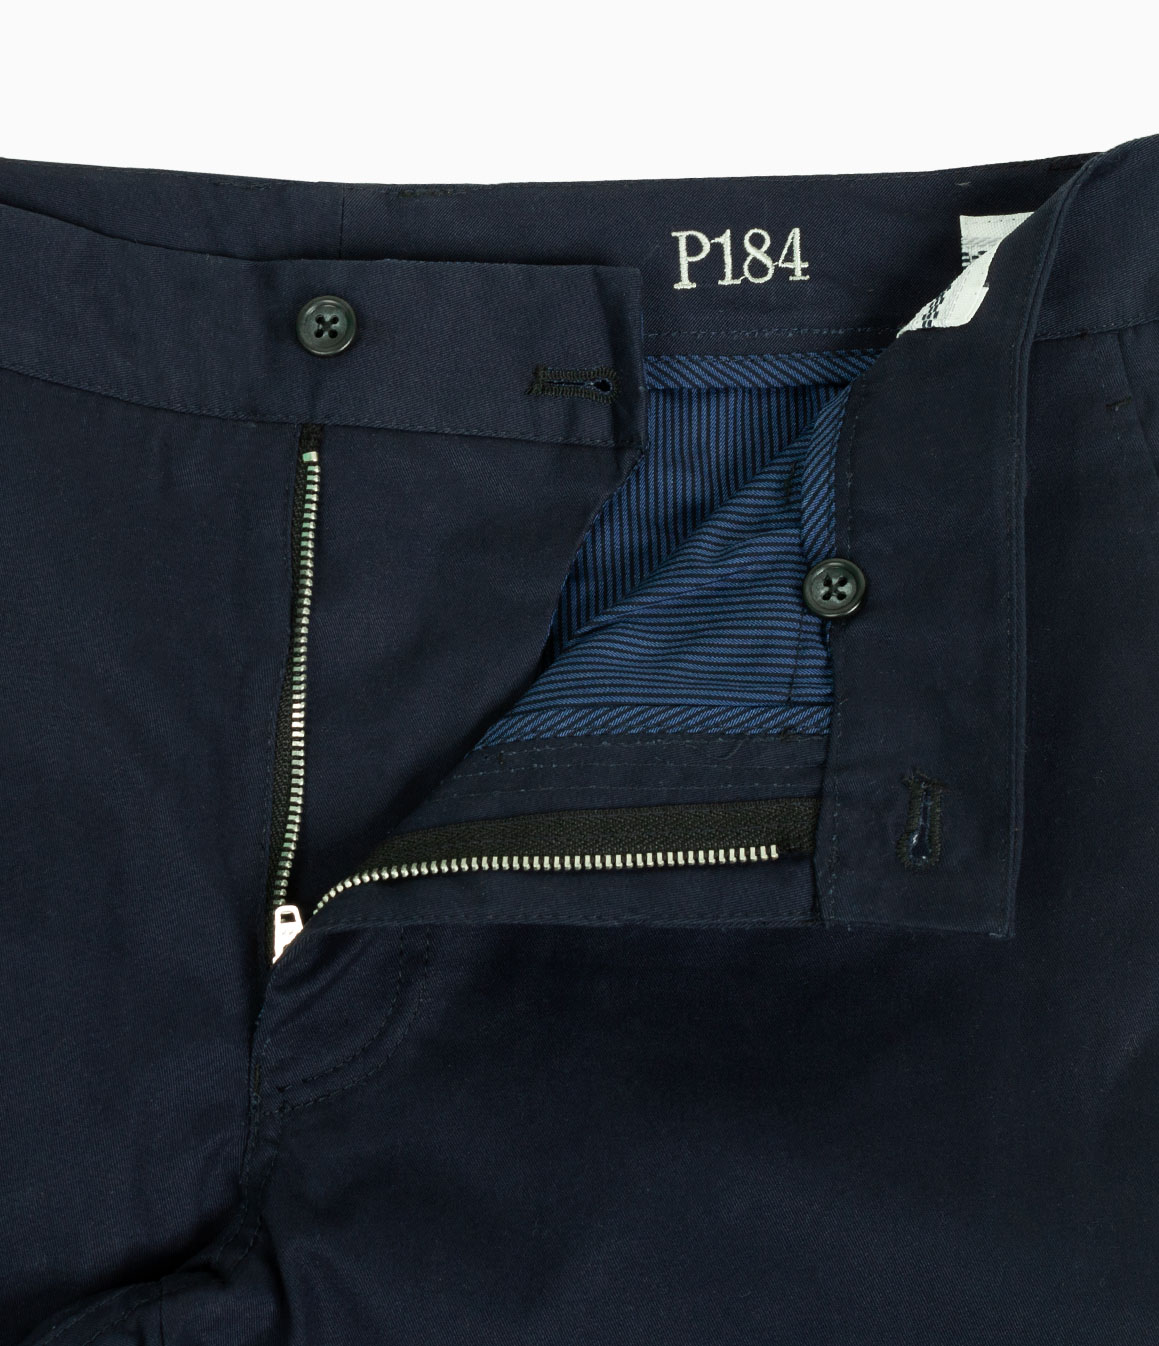 Navy Chino / P184 - Pants